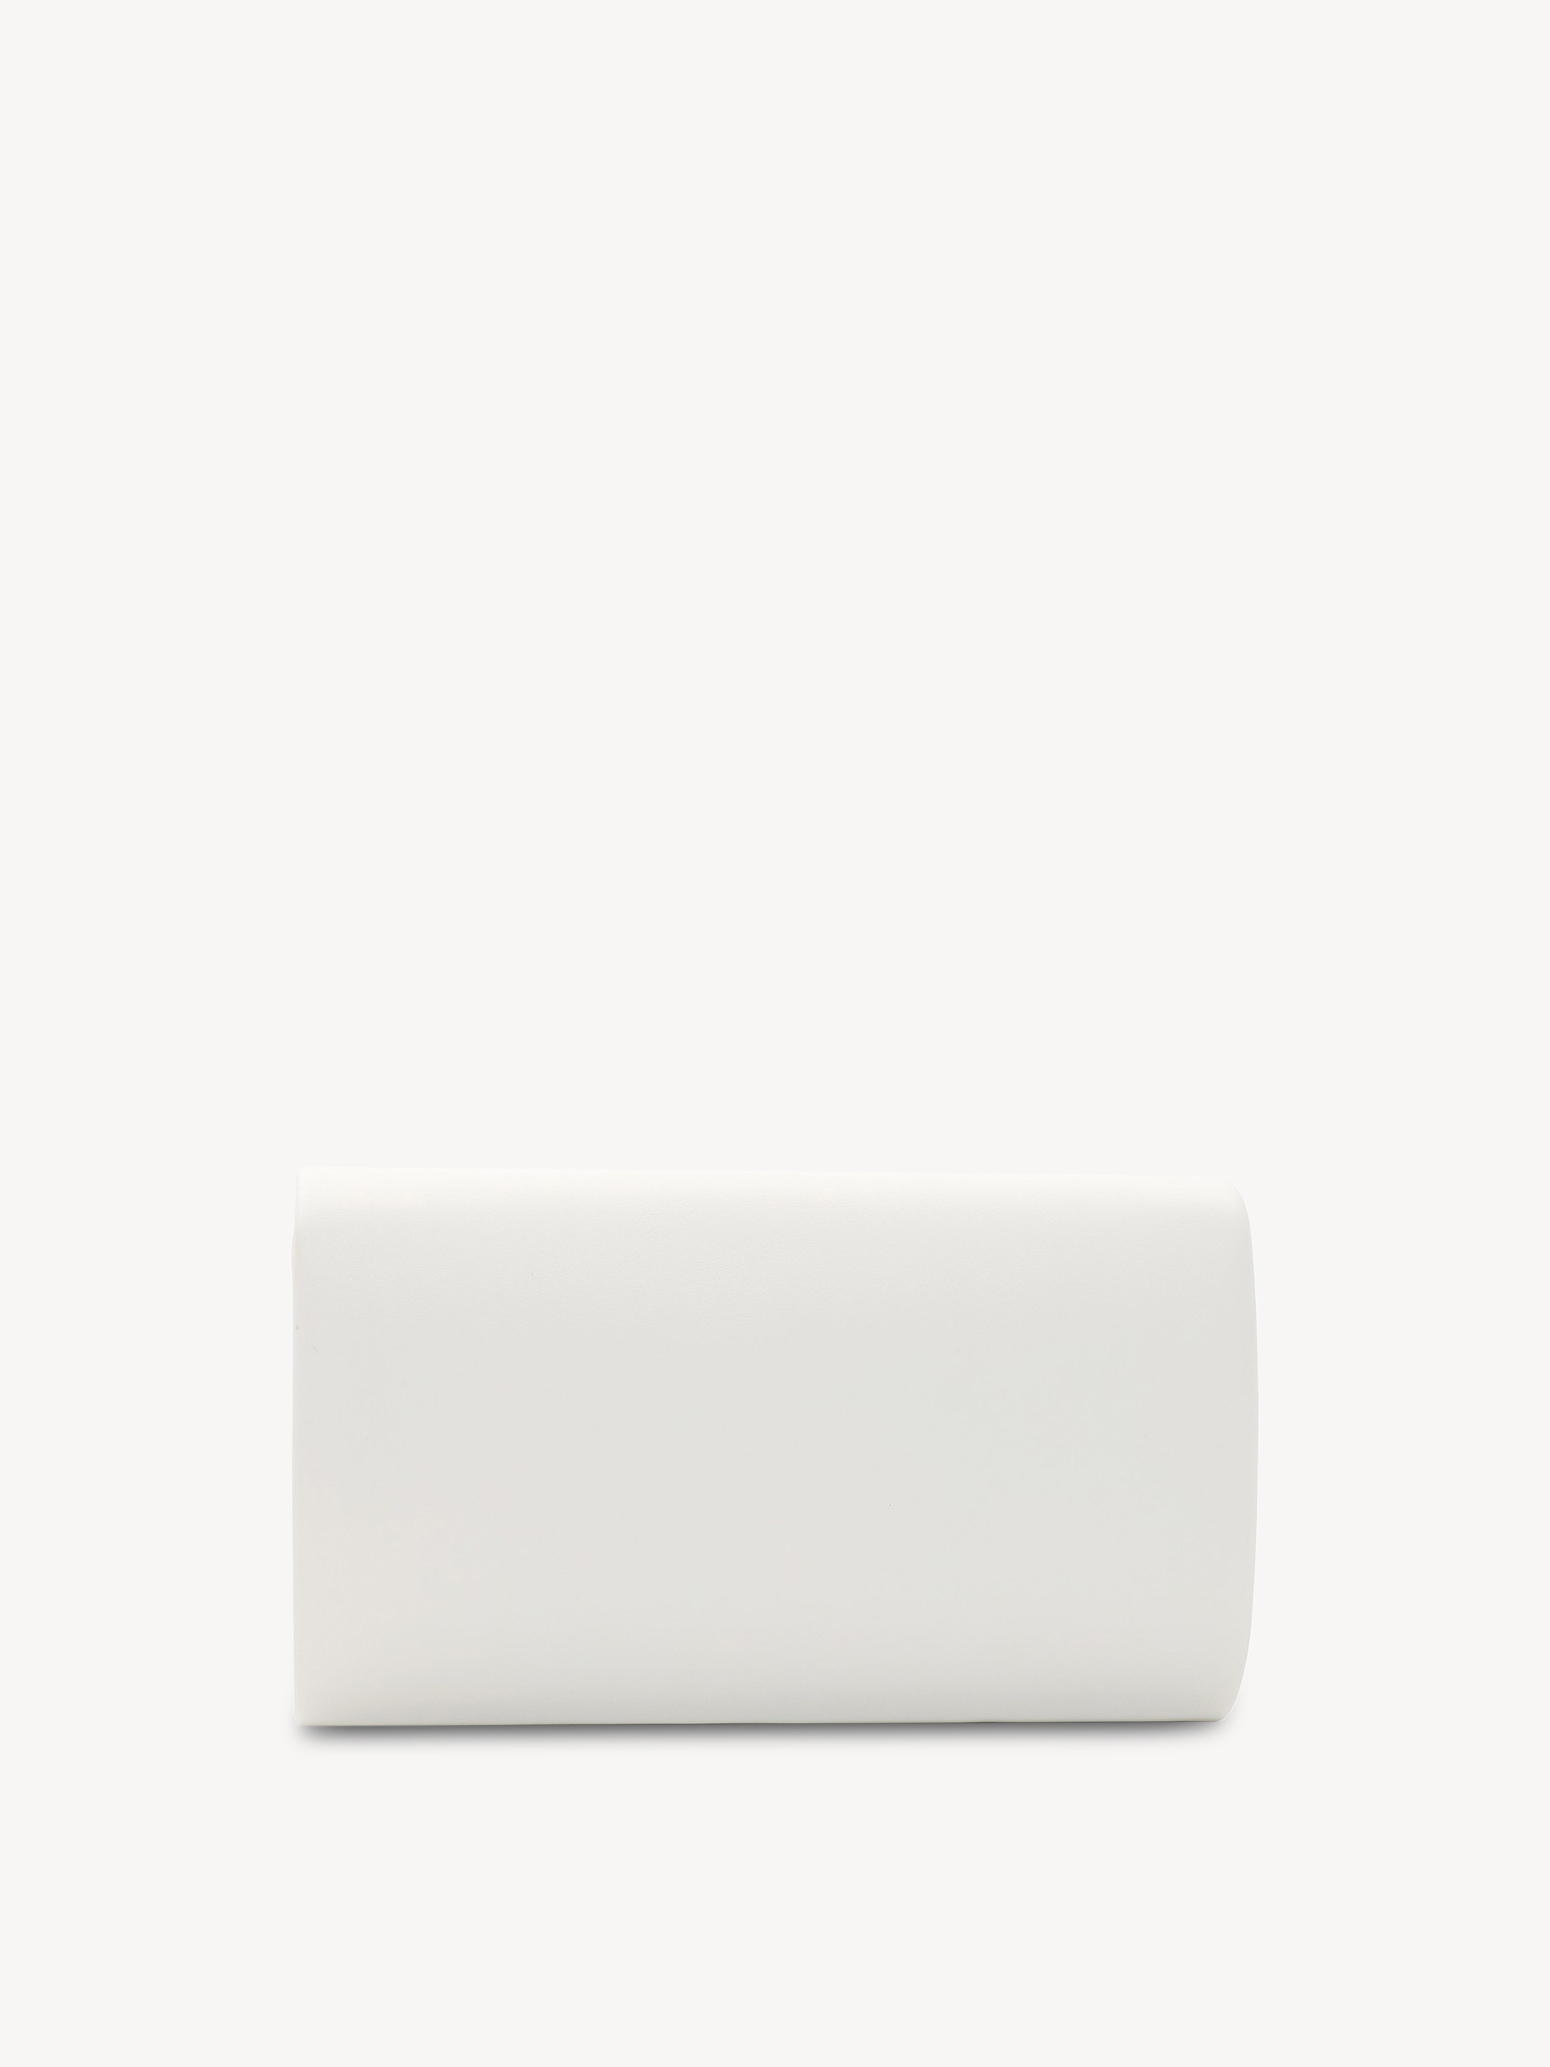 Clutch bag - white, white, hi-res